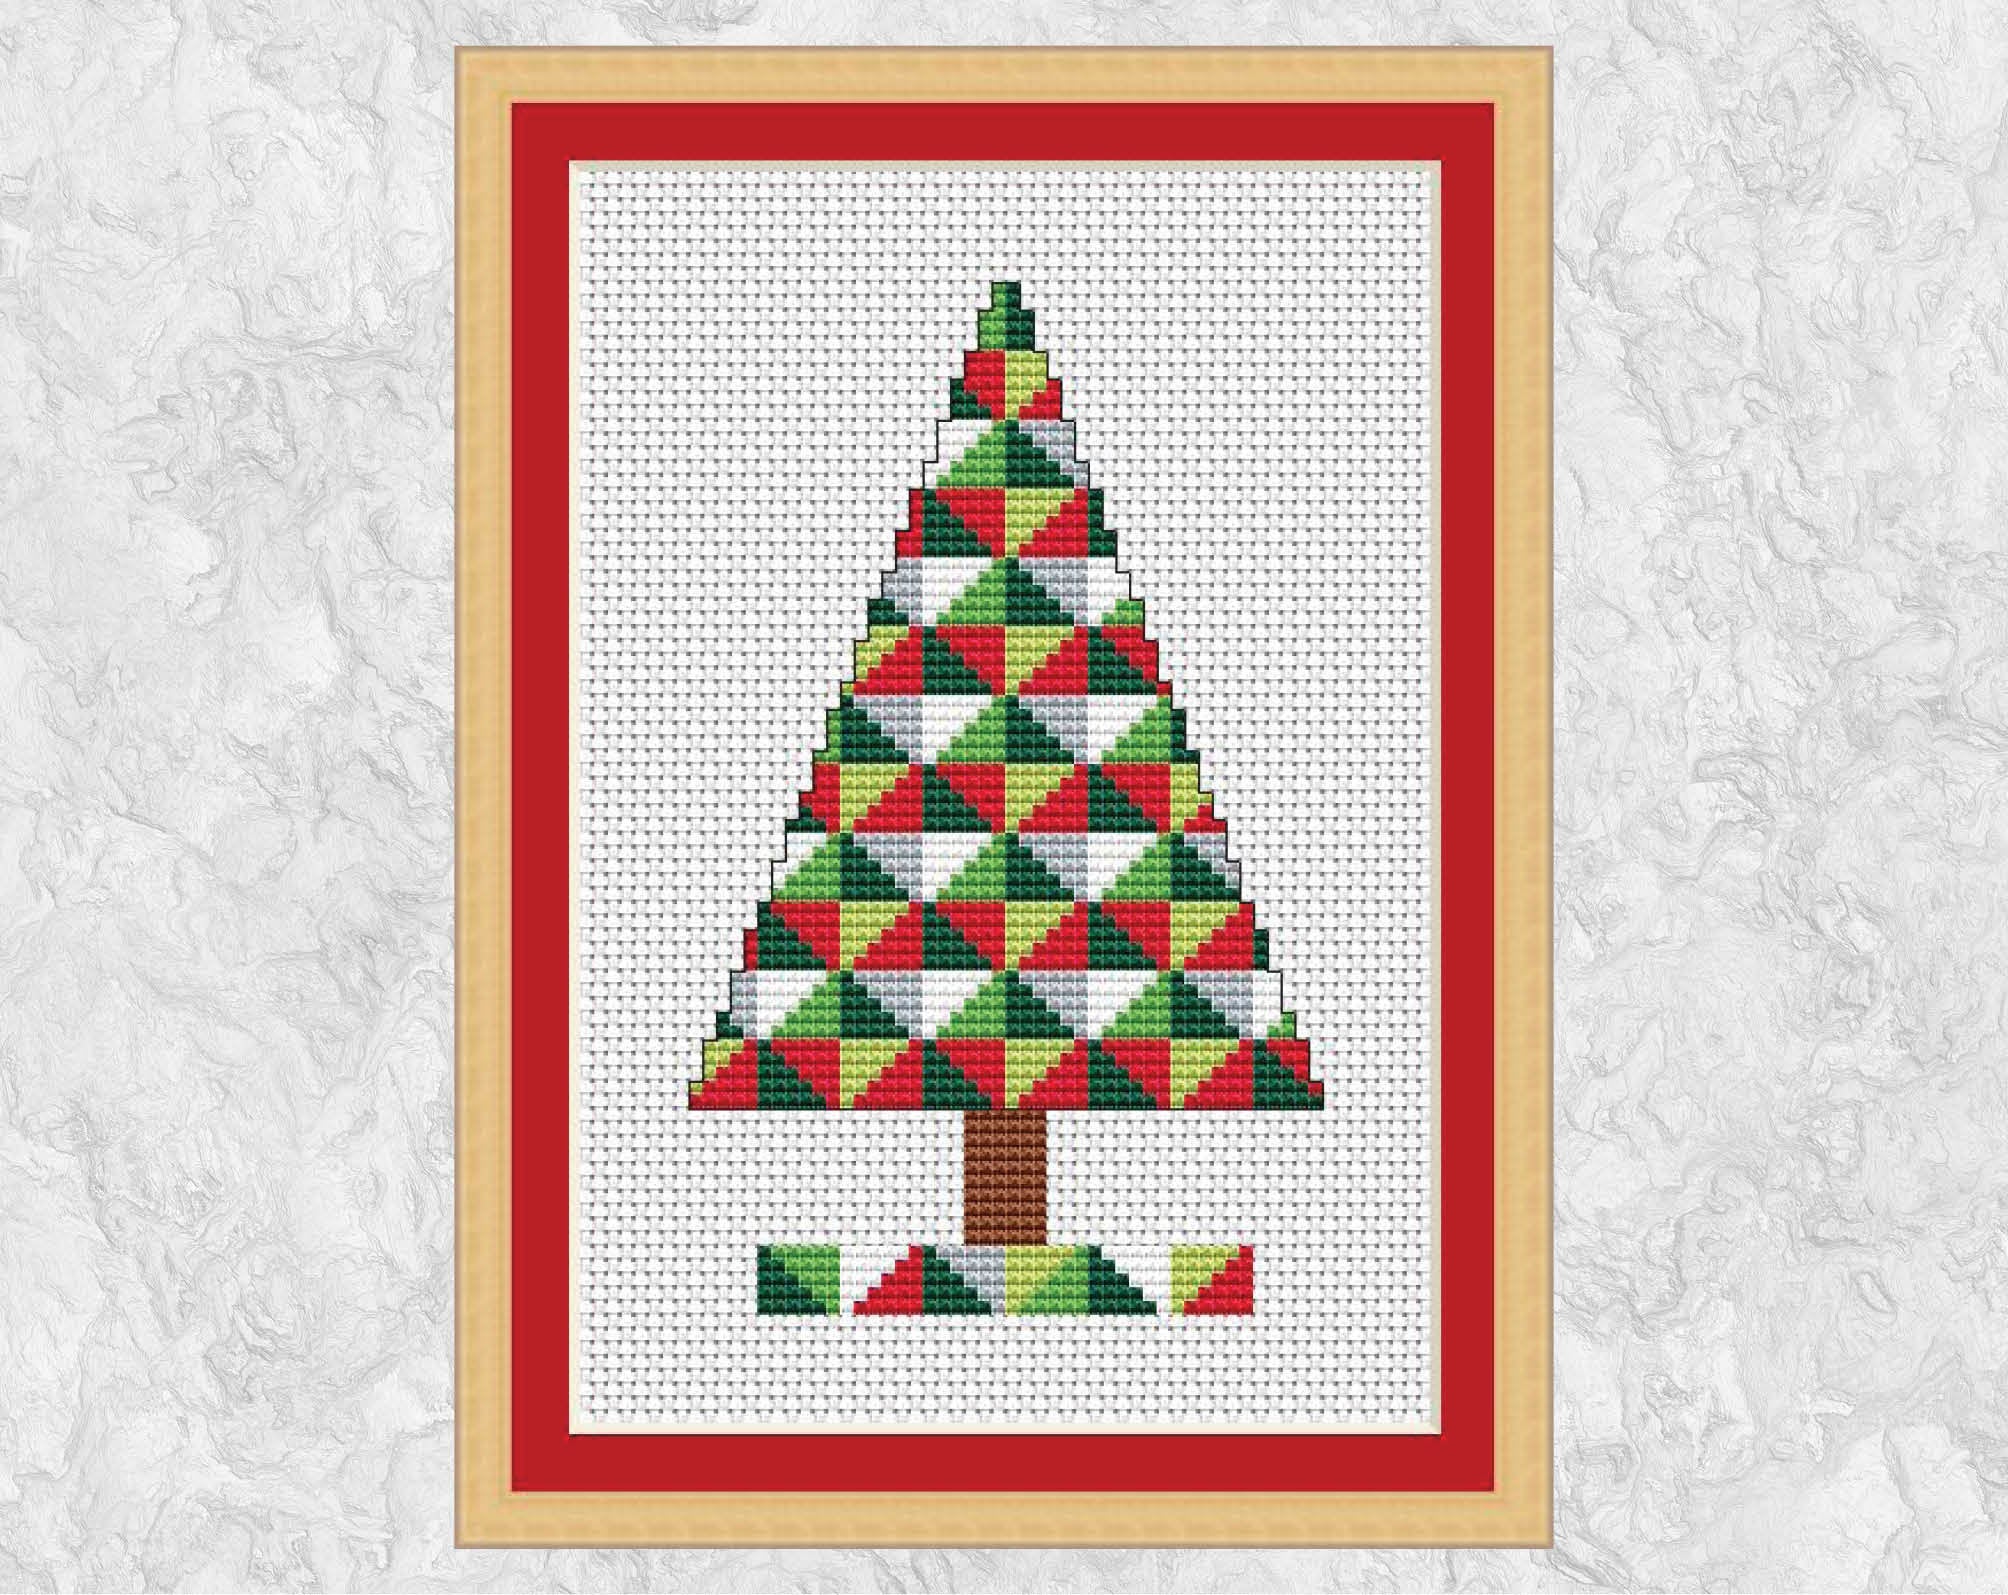 Geometric Christmas Tree cross stitch pattern